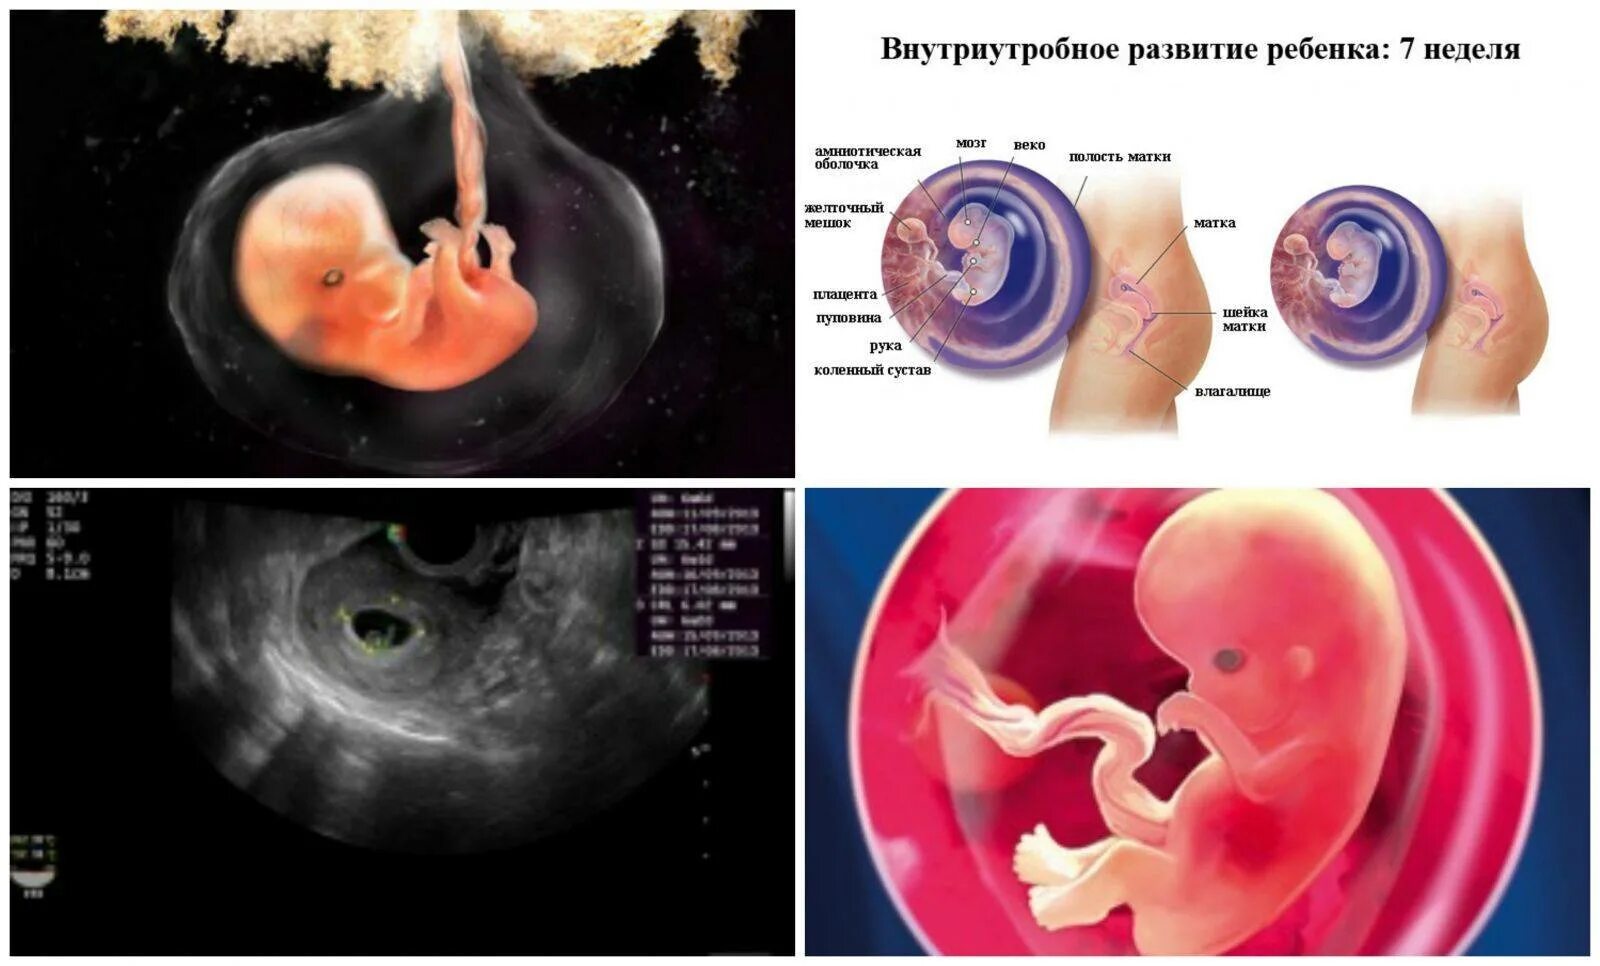 Роды на 7 неделе. Эмбрион по неделям беременности 6-7 недель. Плод эмбриона на 7 неделе беременности. Эмбрион по неделям беременности 7 недель беременности. Фото эмбриона по неделям беременности 7 недель.